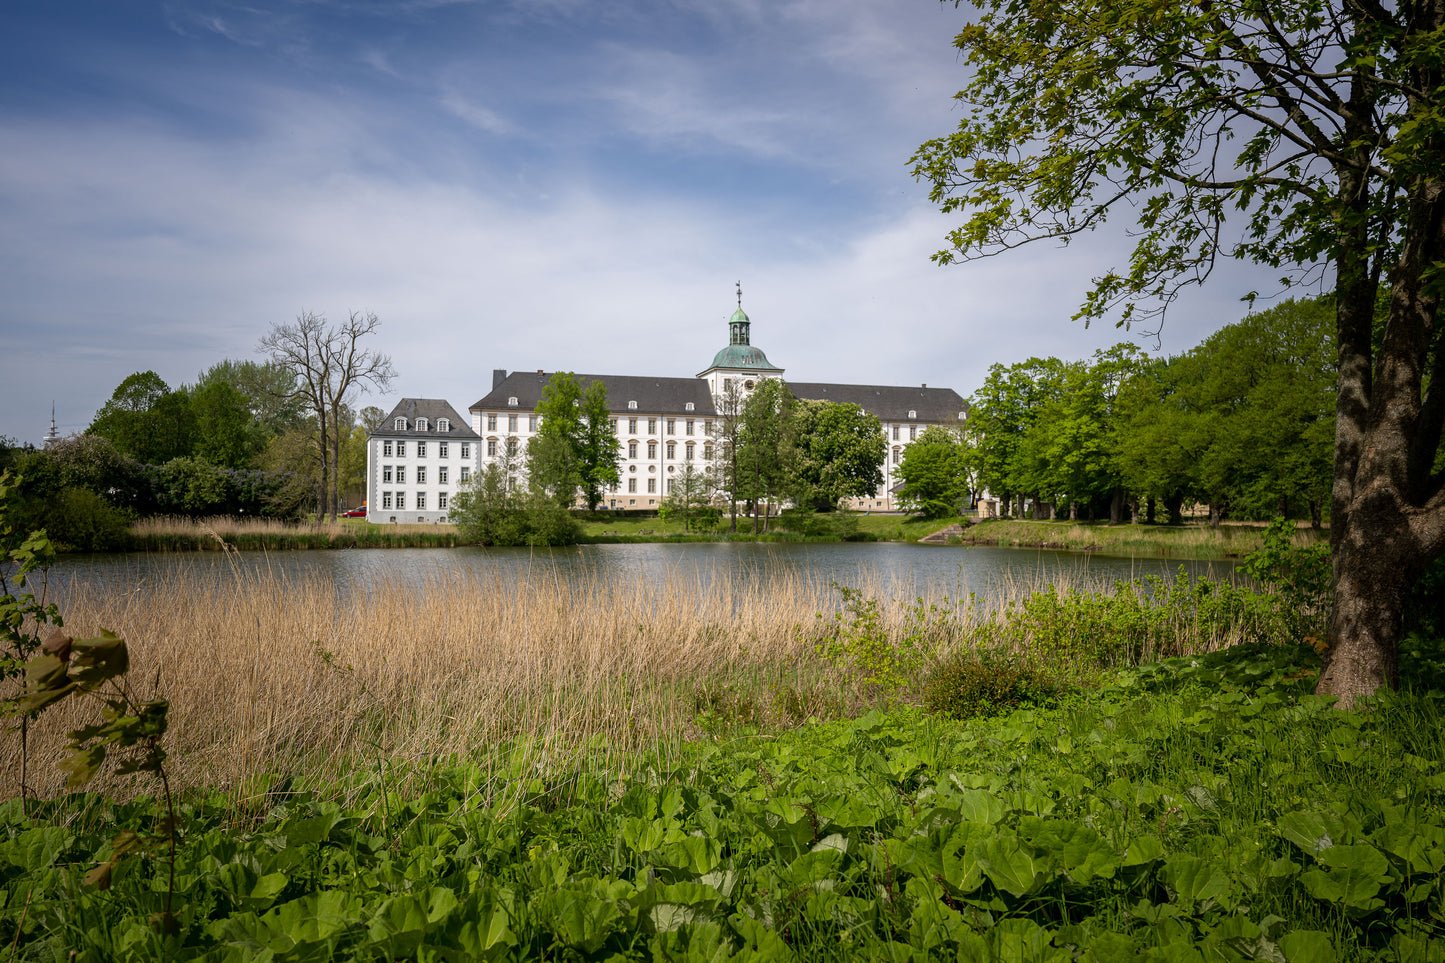 Leinwanddruck #51 "Schloss Gottorf in Schleswig"